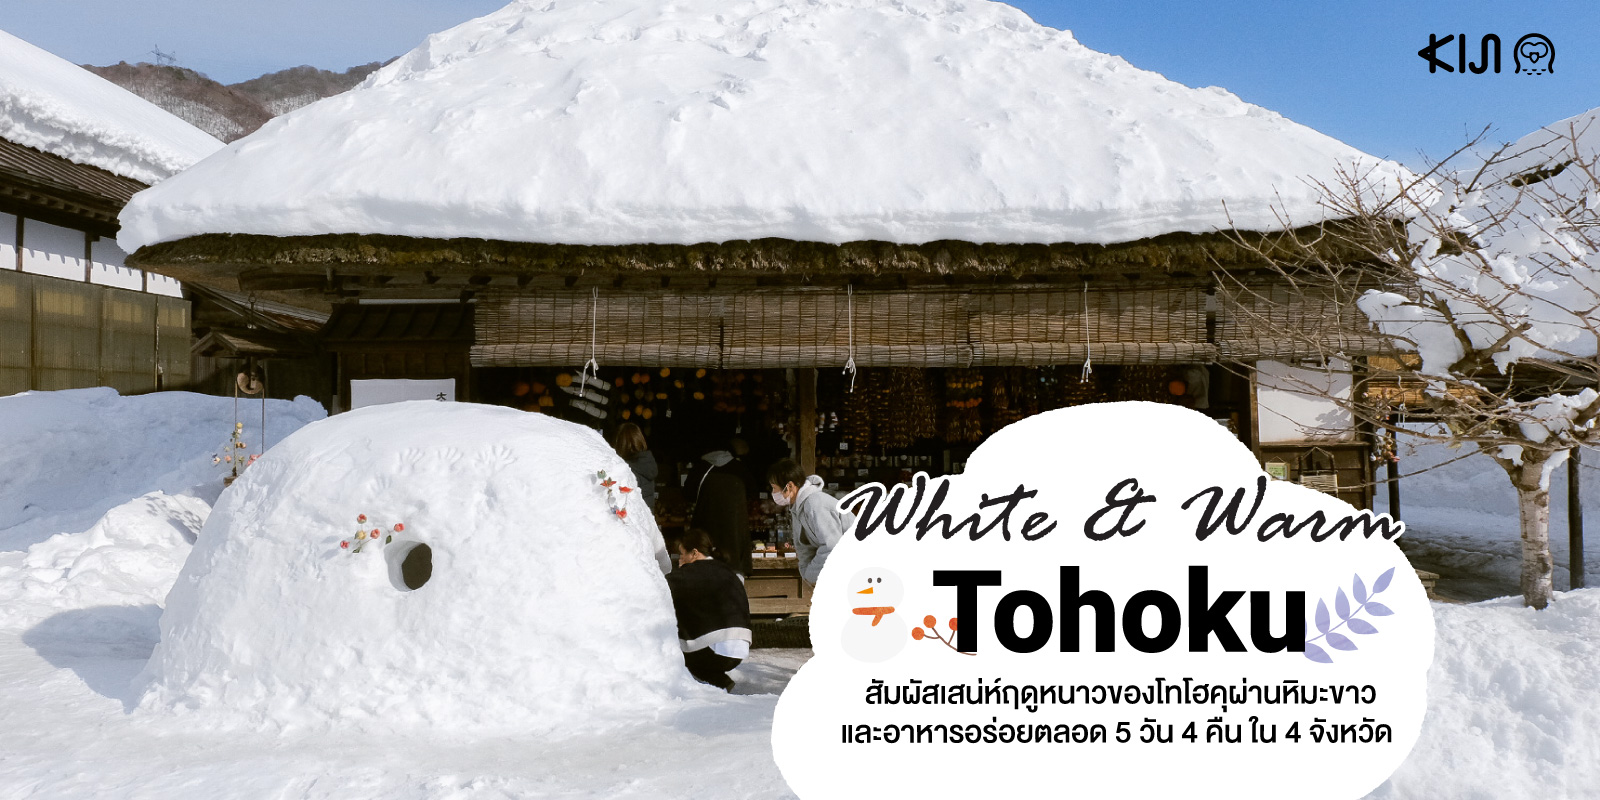 White & Warm Tohoku : สัมผัสเสน่ห์ช่วงฤดูหนาวของ โทโฮคุ ผ่านหิมะขาวและอาหารอร่อยตลอด  5 วัน 4 คืน ใน 4 จังหวัด